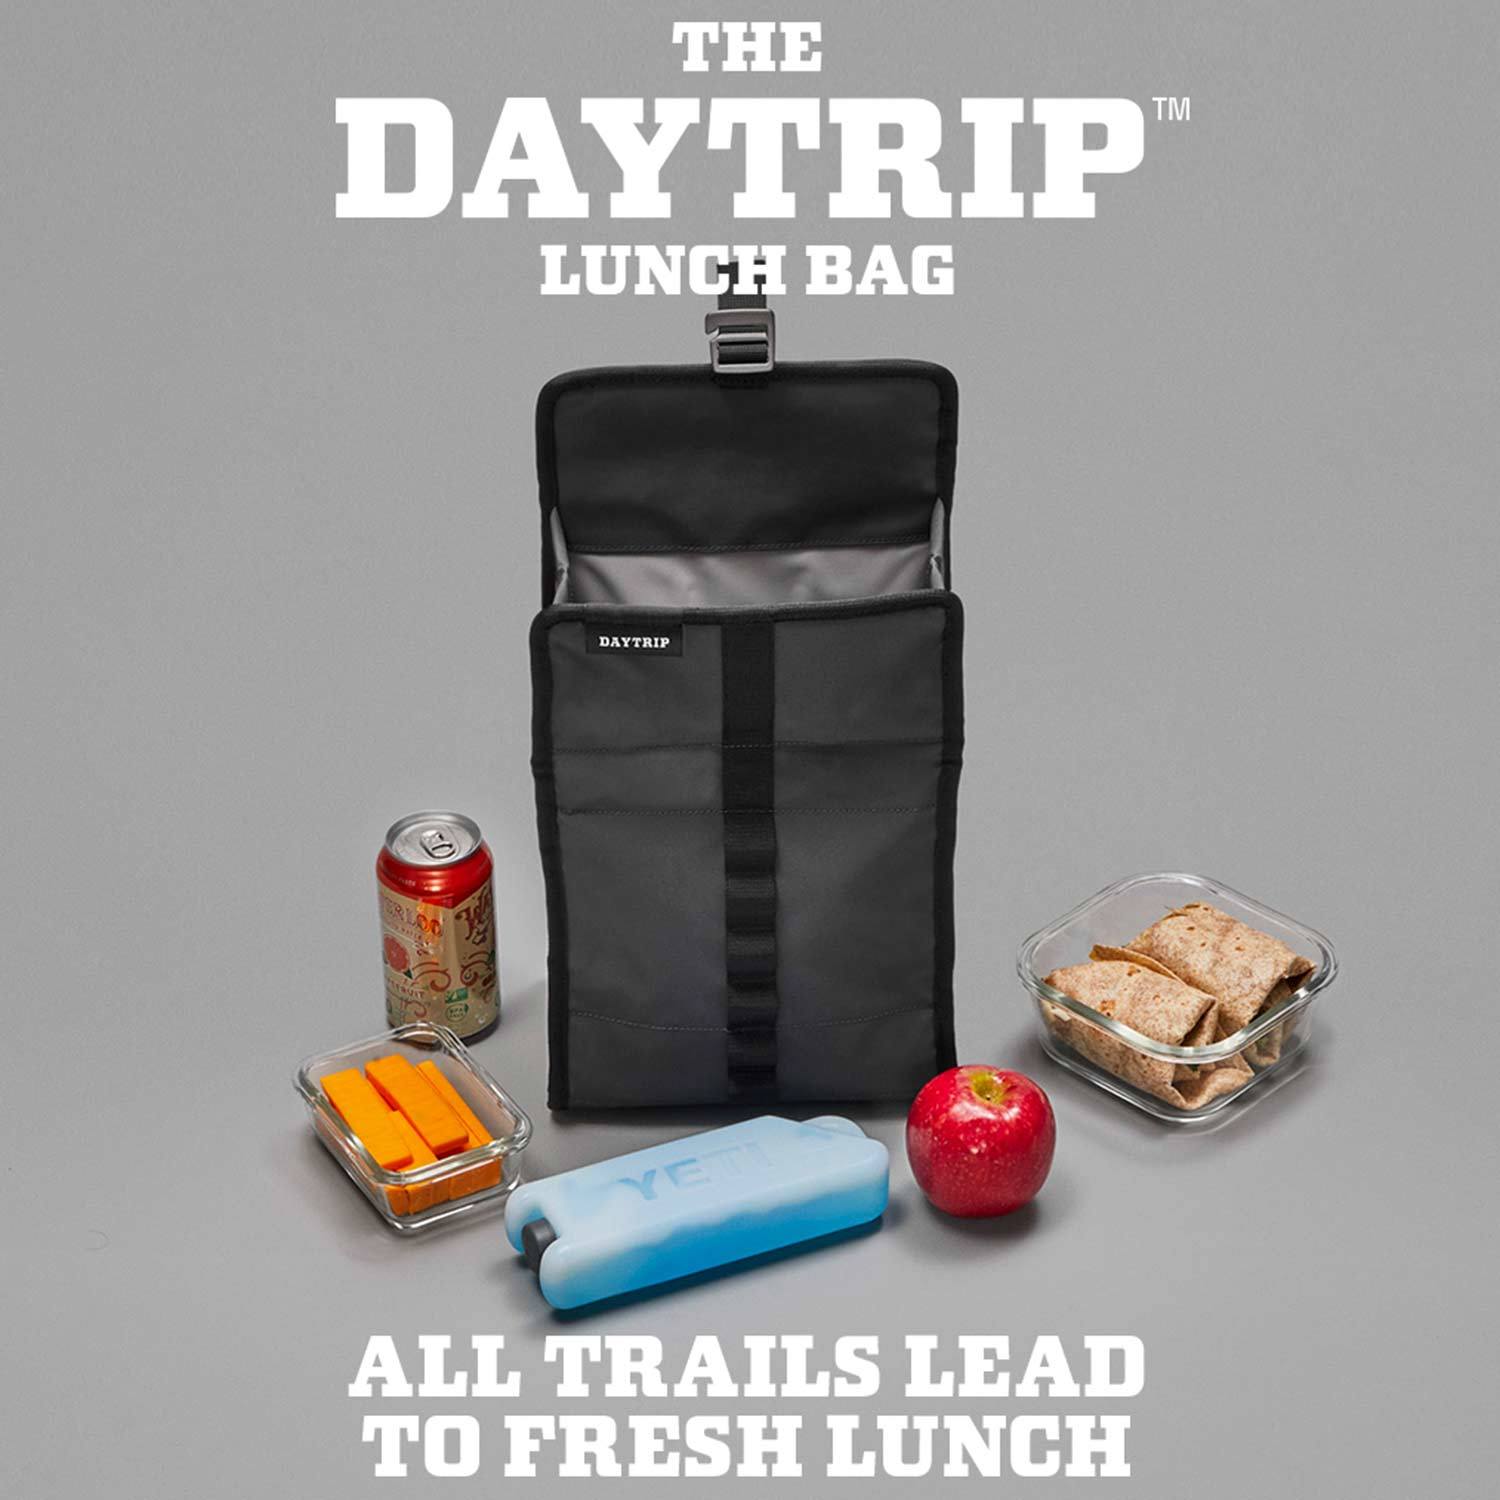 YETI Daytrip Lunch Bag